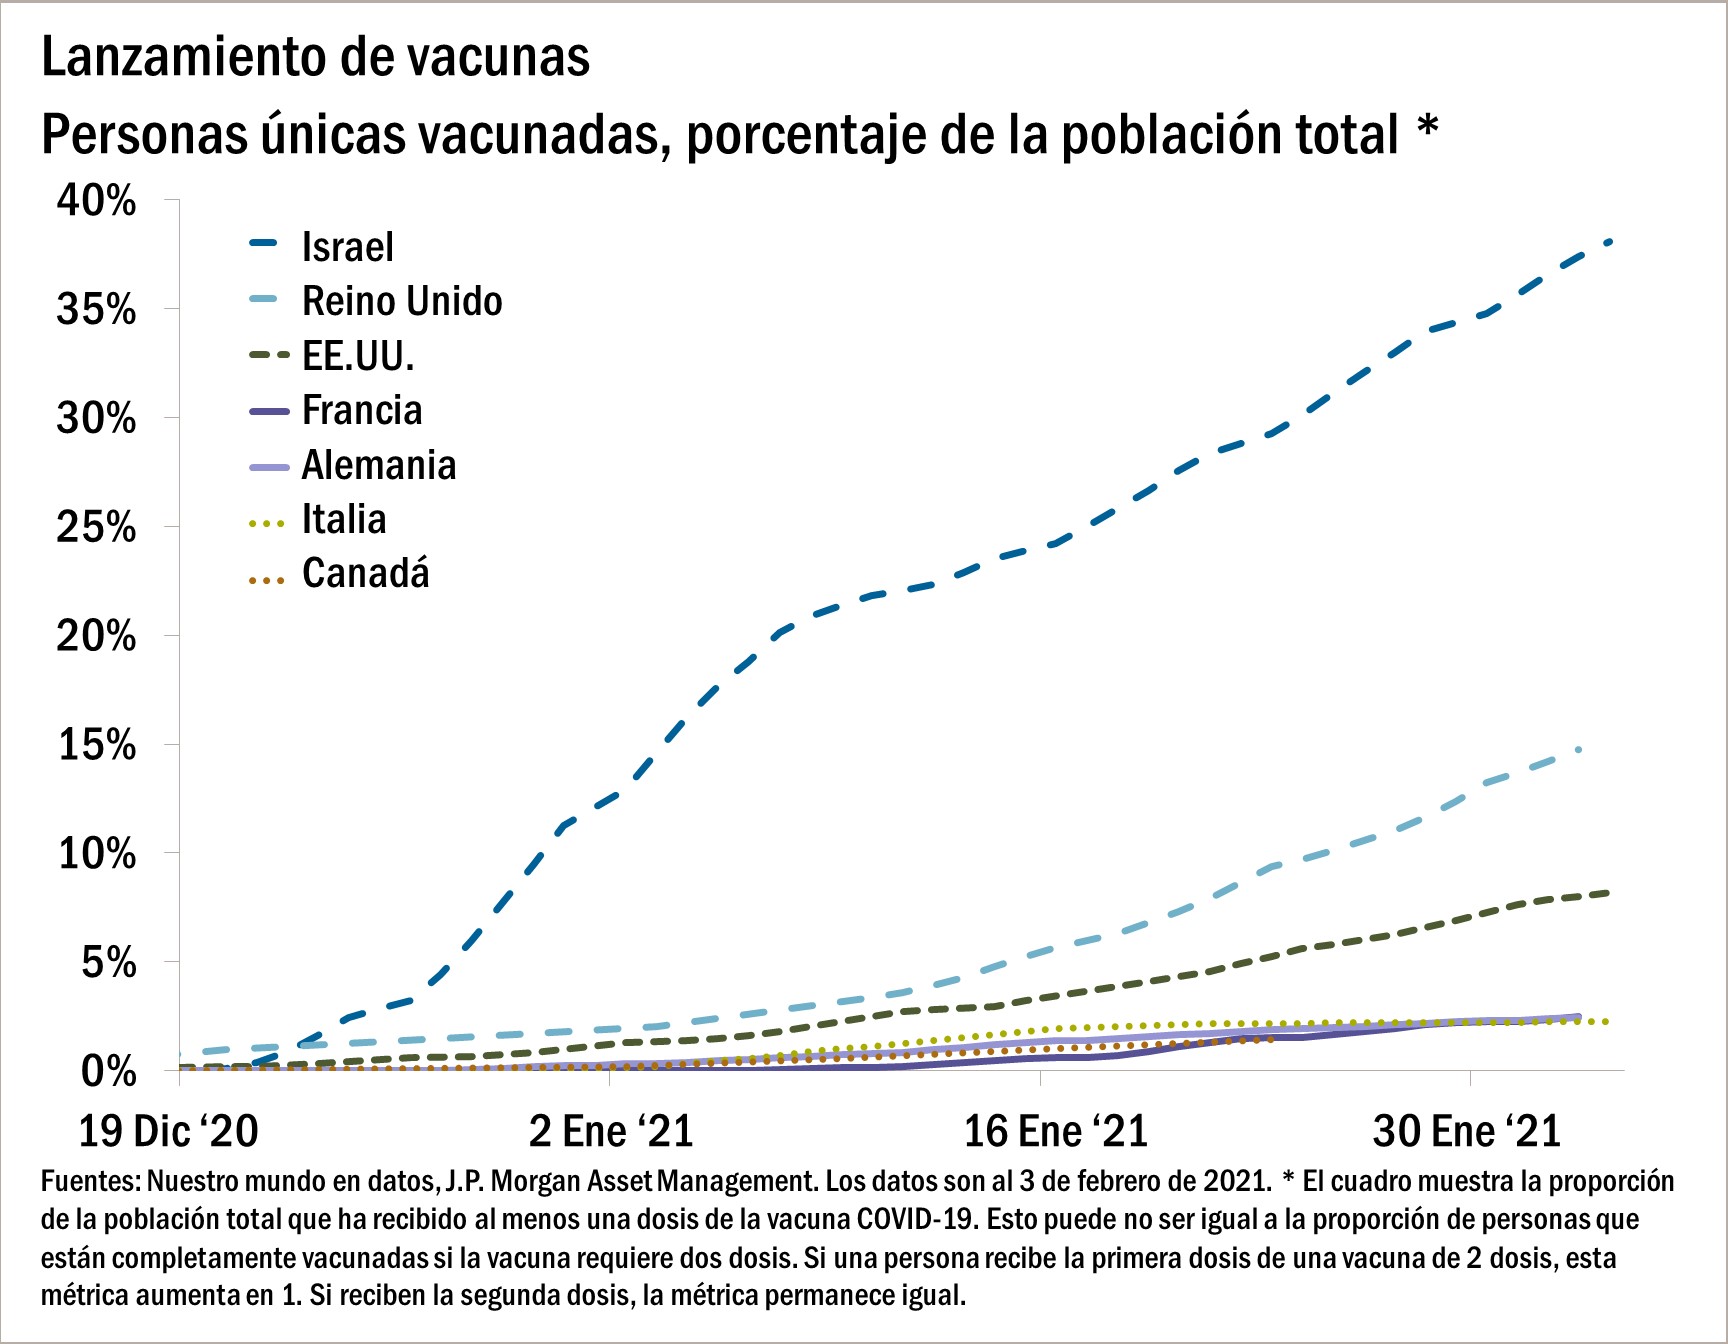 El gráfico muestra el porcentaje de la población total de cada país que ha recibido al menos una dosis de vacuna desde el 19 de diciembre de 2020 hasta el 3 de febrero de 2021. El gráfico muestra que Israel y el Reino Unido están a la cabeza en el lanzamiento de vacunas, mientras que Francia, Alemania, Italia y Canadá están rezagados.